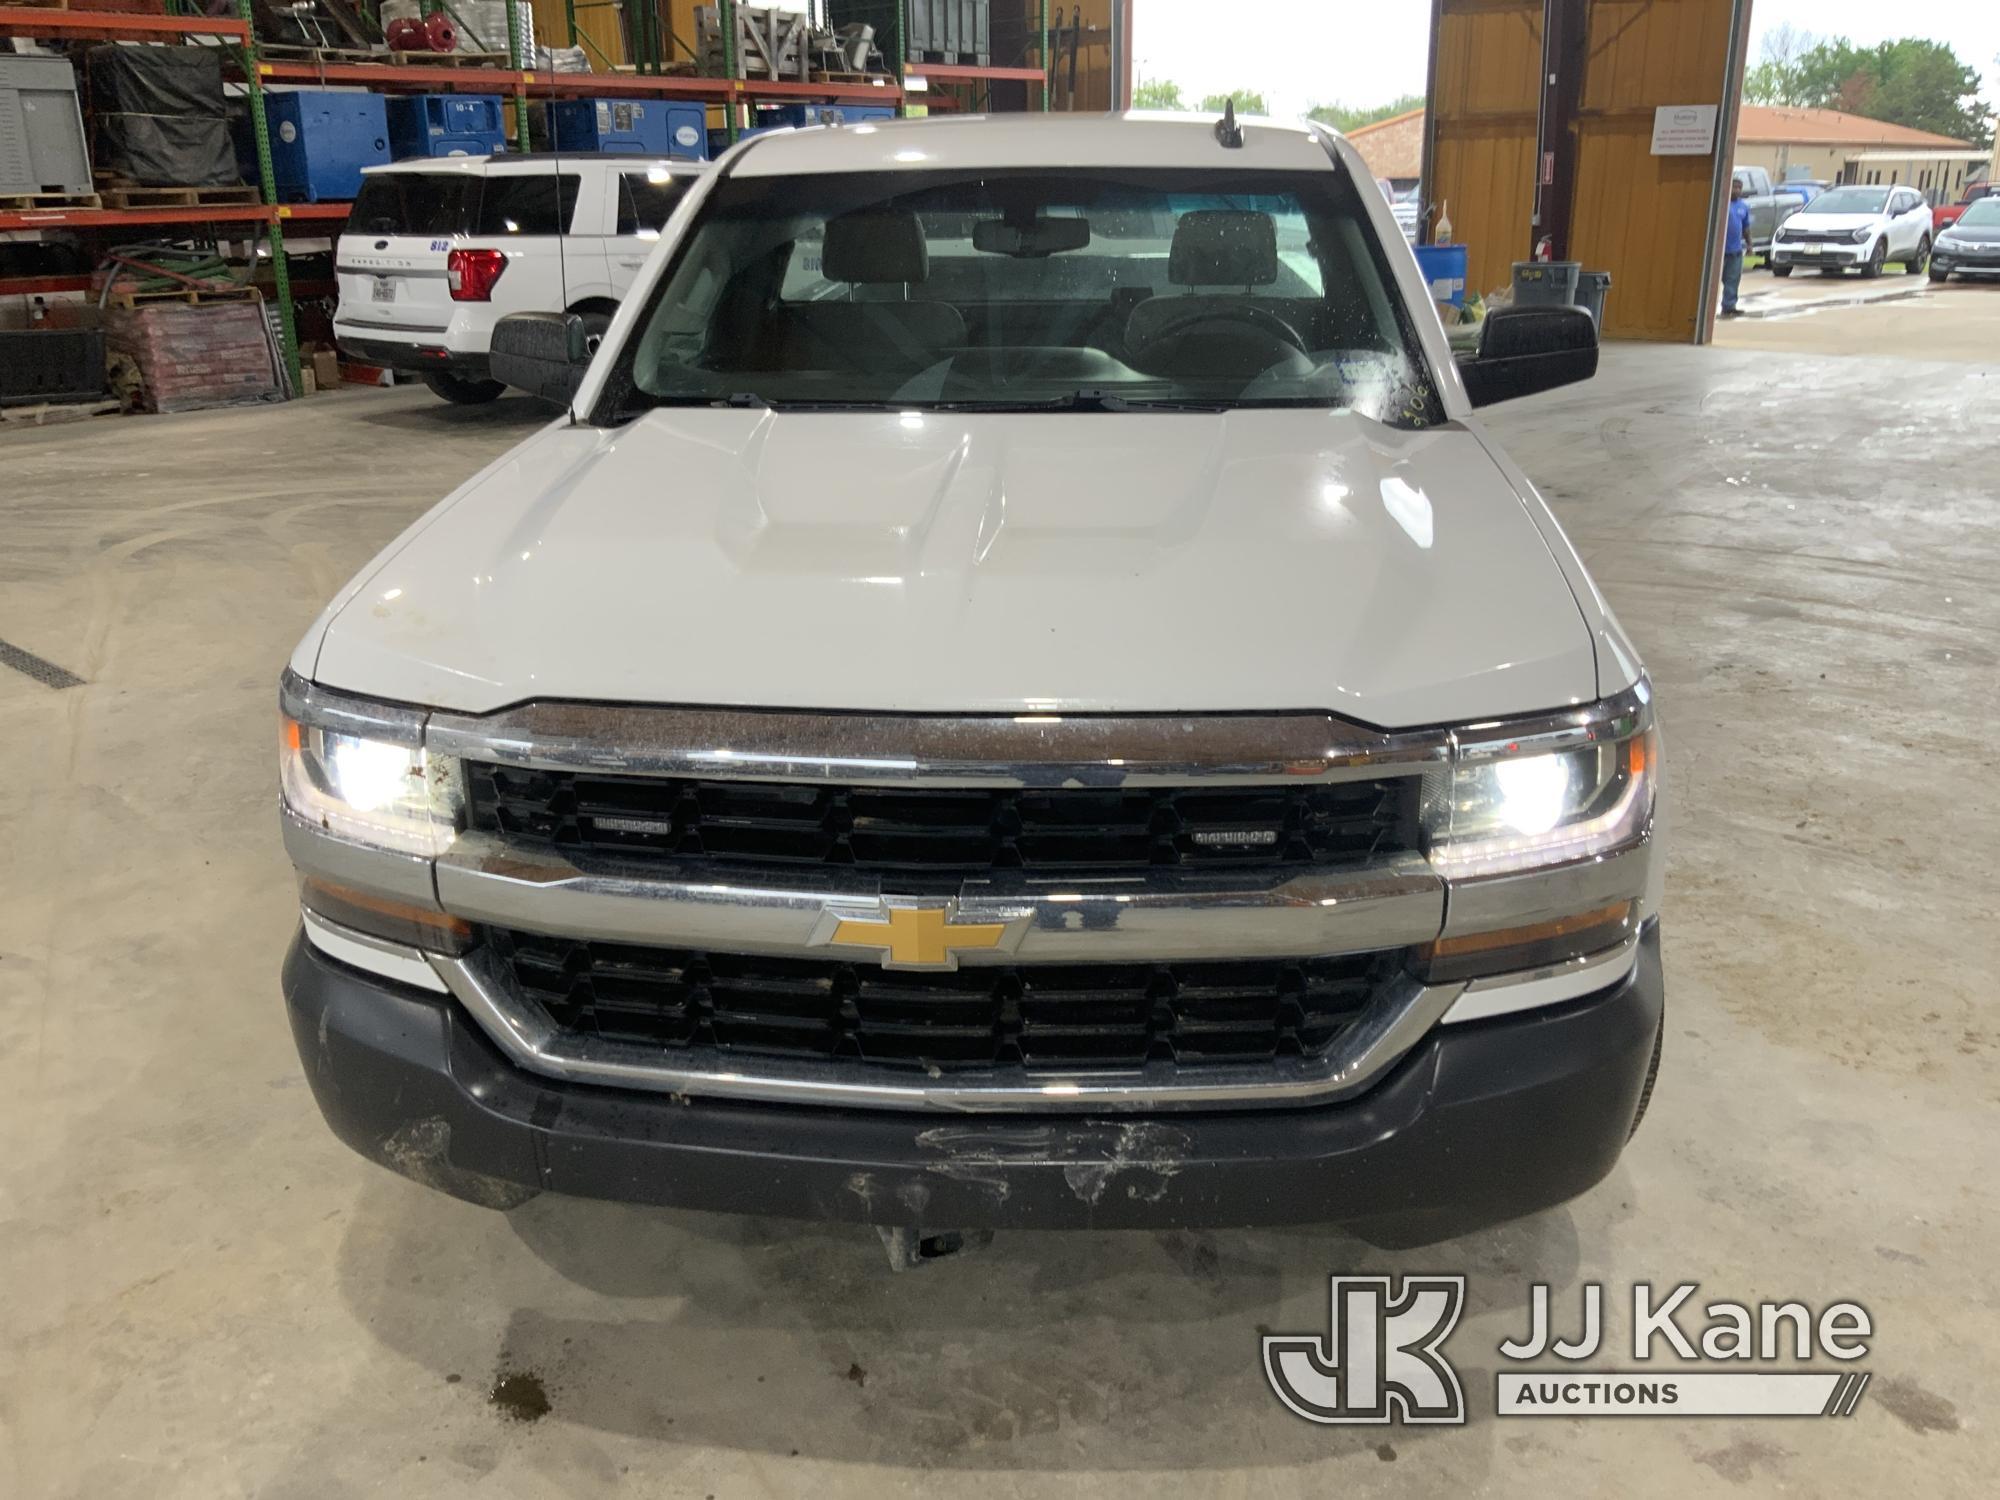 (Aubrey, TX) 2017 Chevrolet Silverado 1500 Pickup Truck Runs & Moves